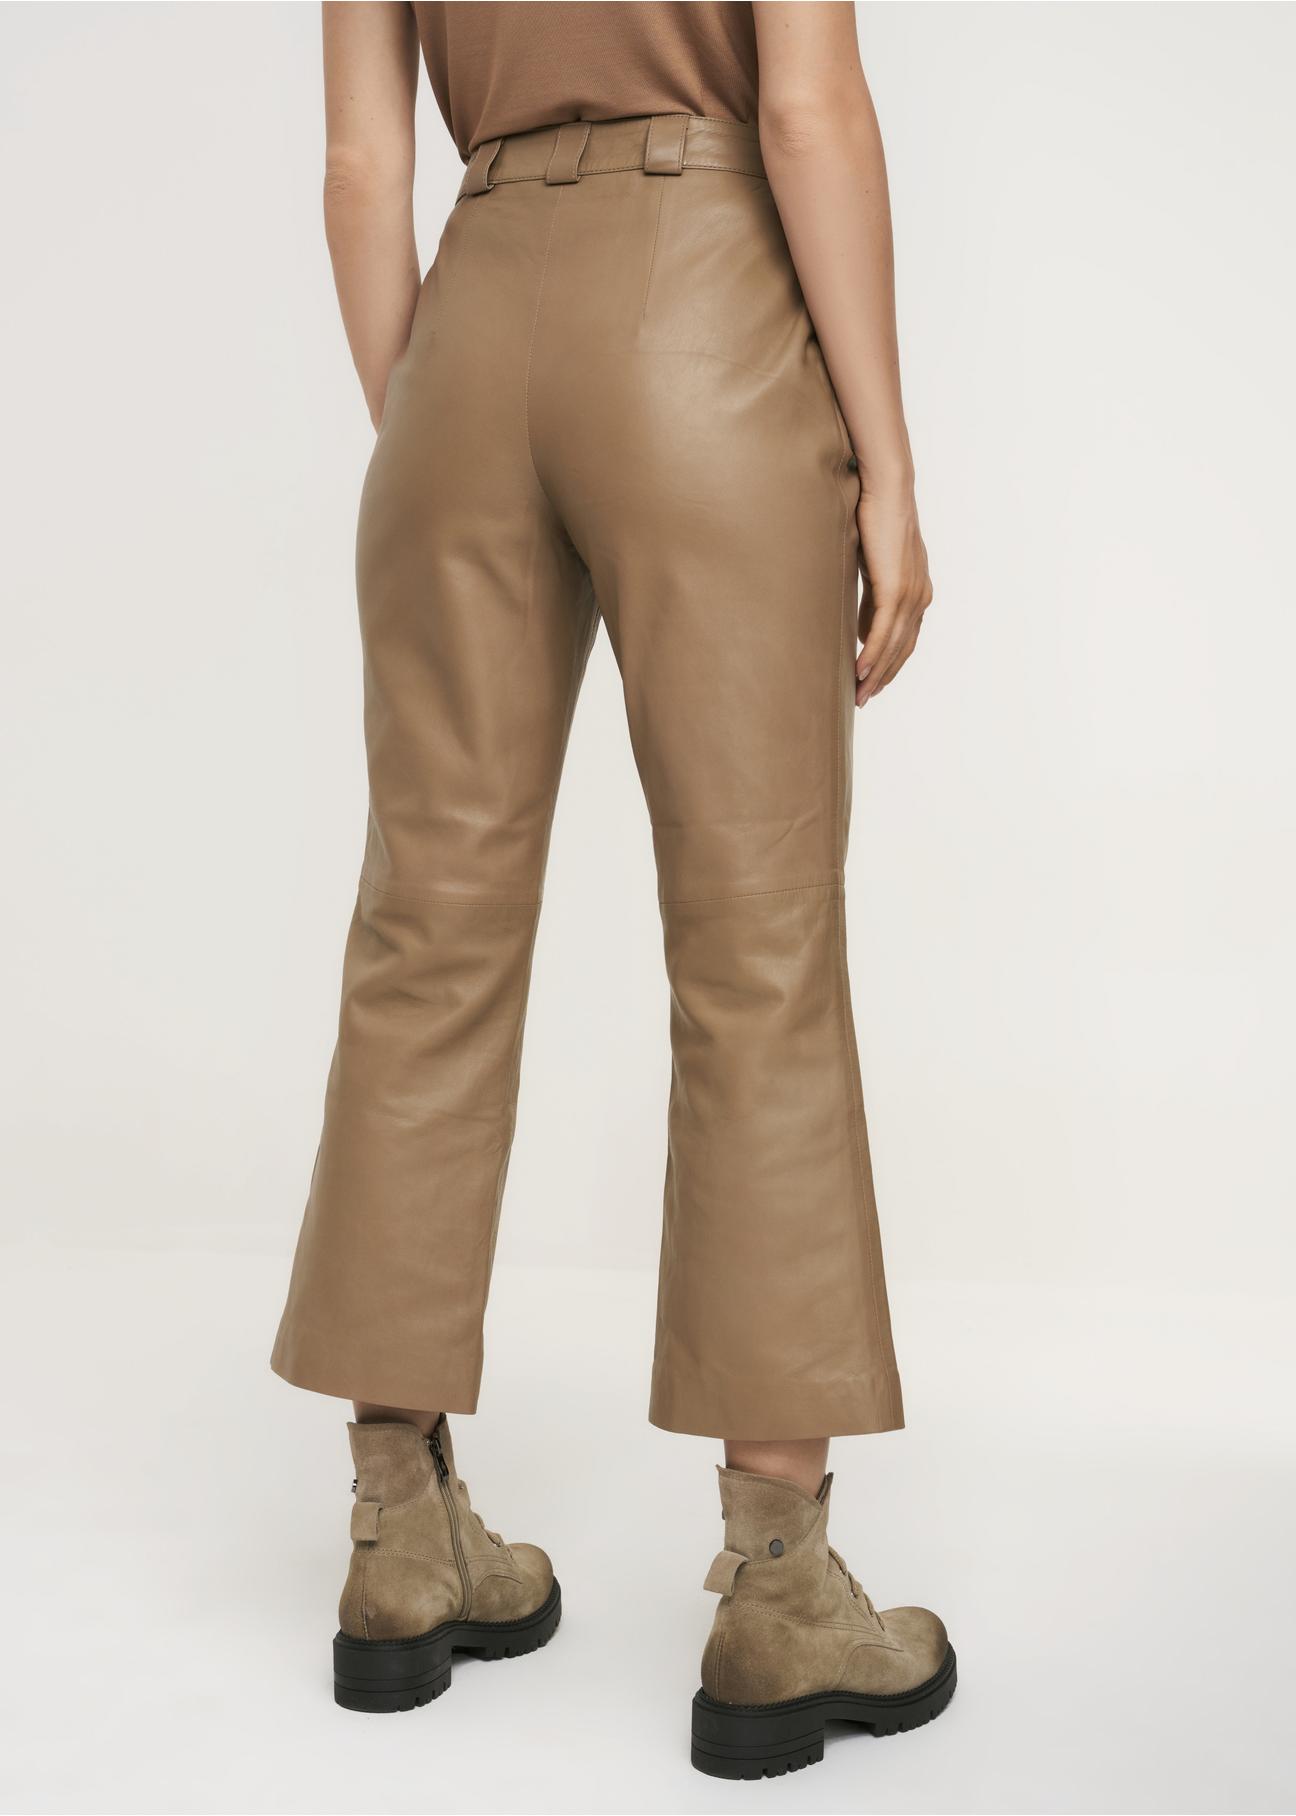 Szerokie spodnie skórzane damskie SPODS-0032-1262(Z22)